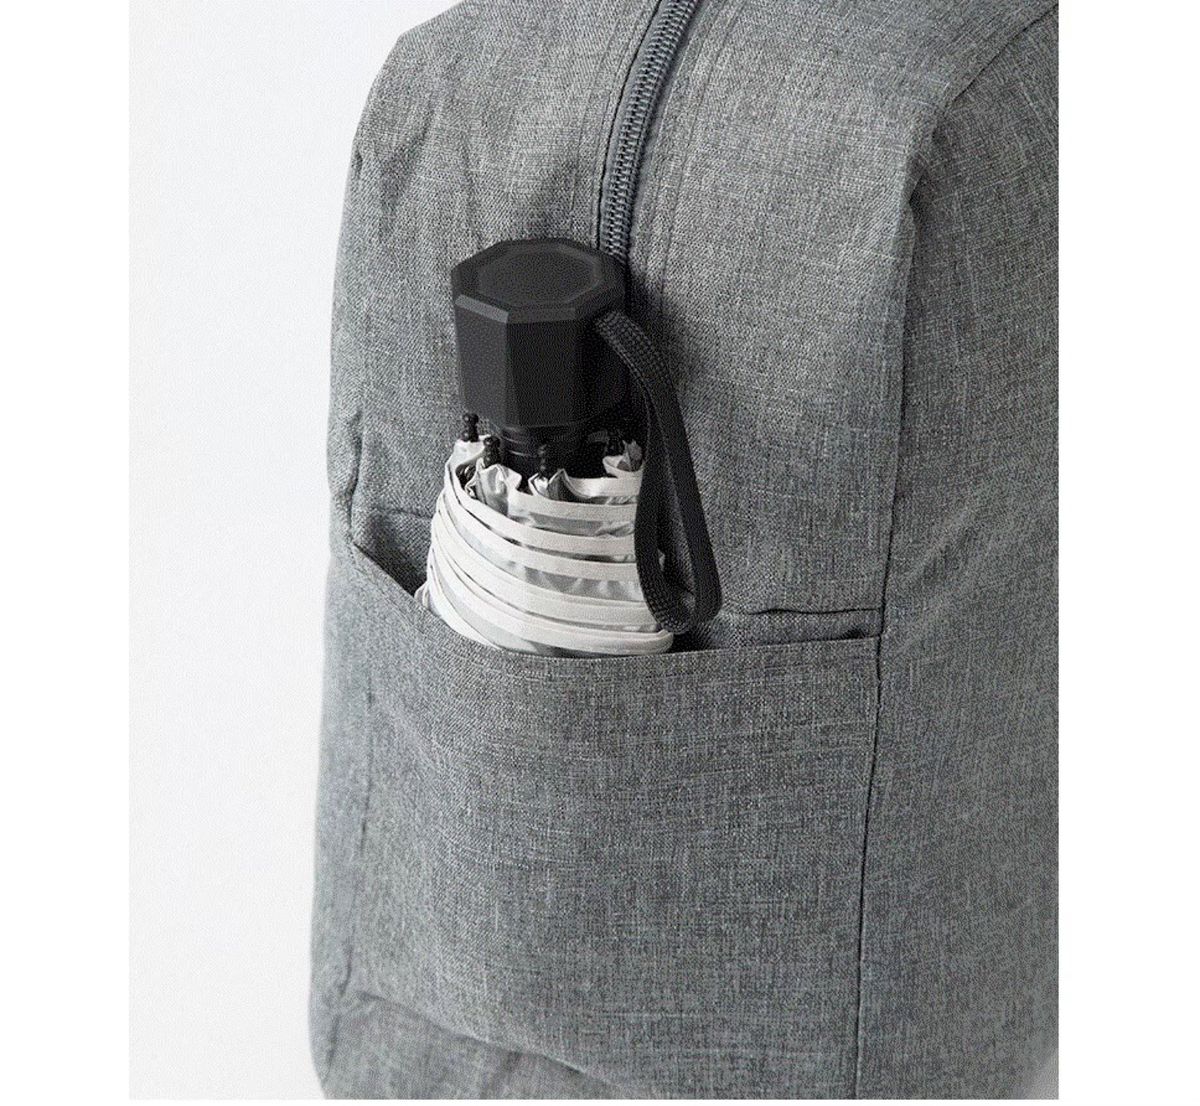 ボストンバッグ キャリーケース 対応 折り畳み 旅行 キャリーオンバッグ サイドポケット 軽量 コンパクト 撥水加工